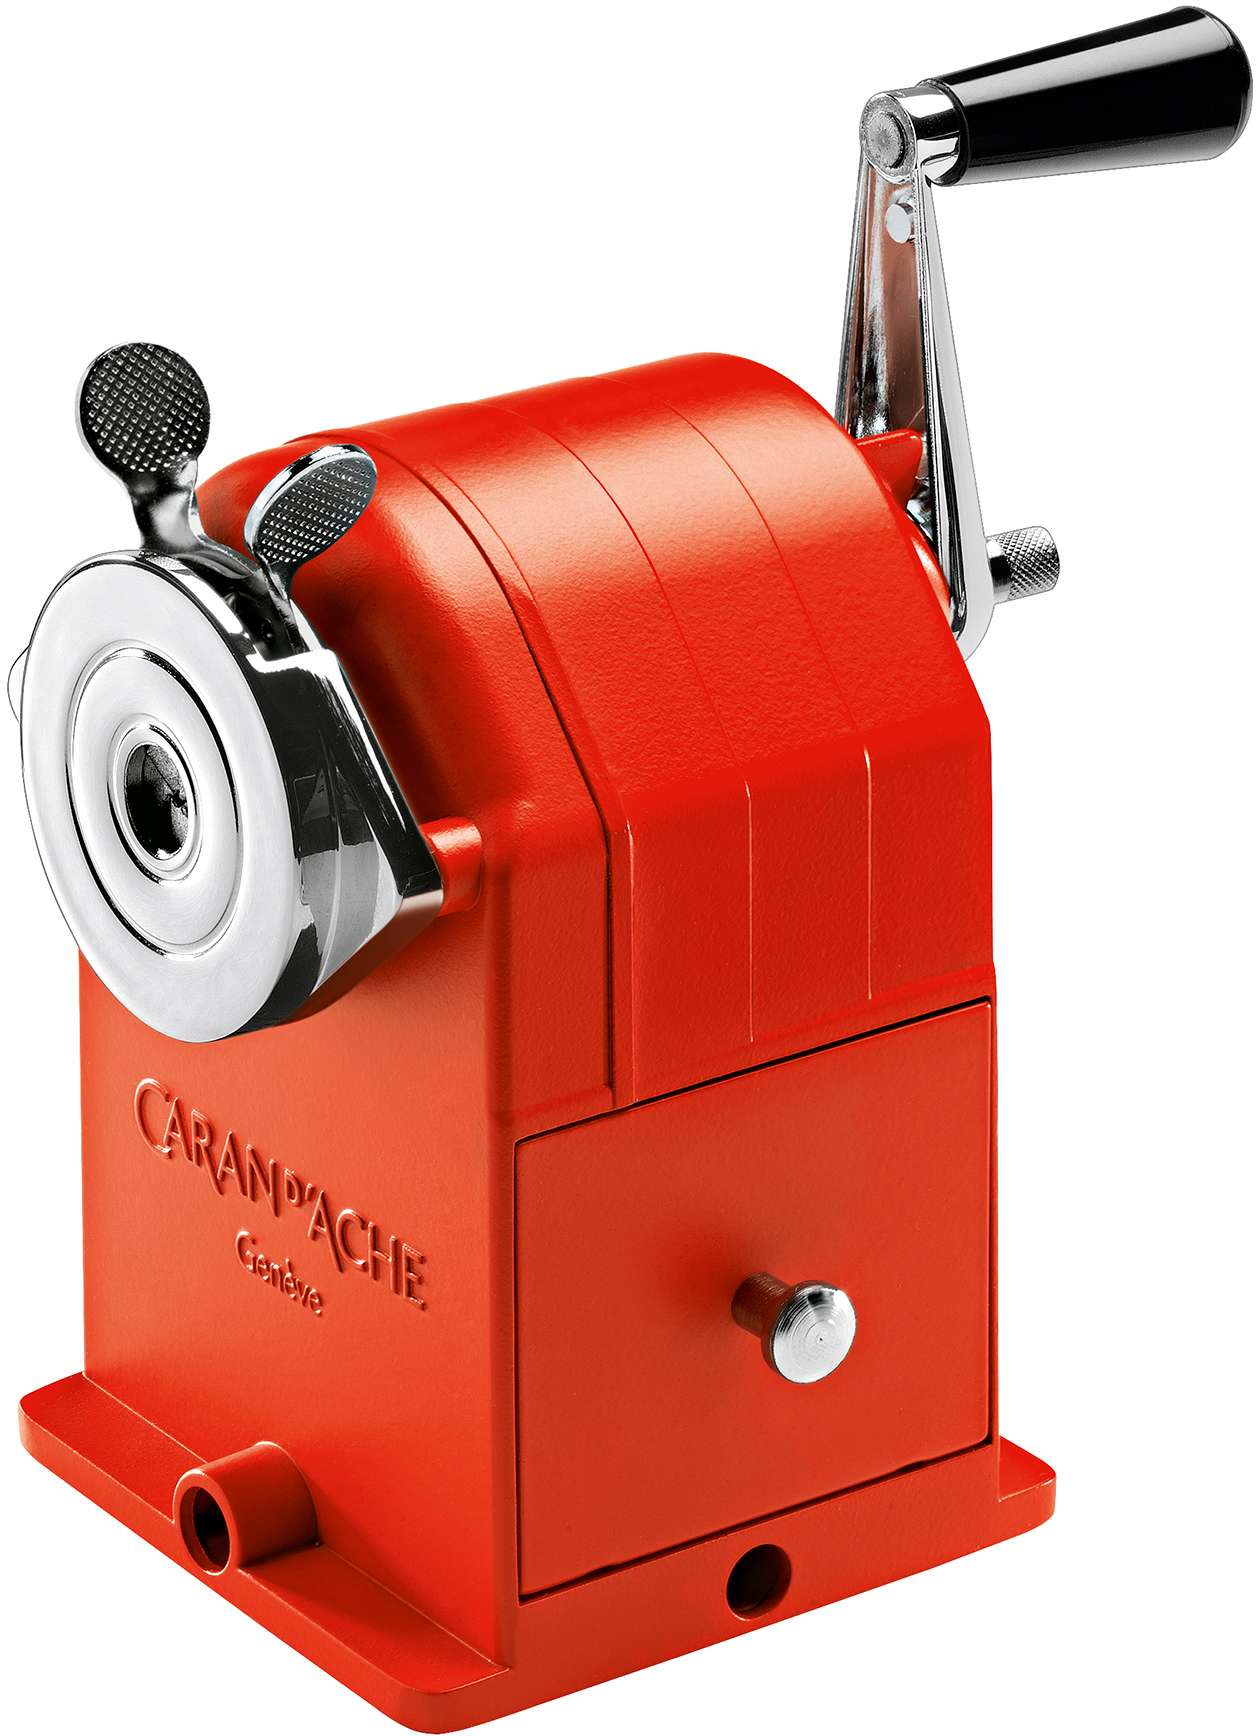 CARAN D'ACHE Machine à tailler 455 455.270 métal, rouge métal, rouge